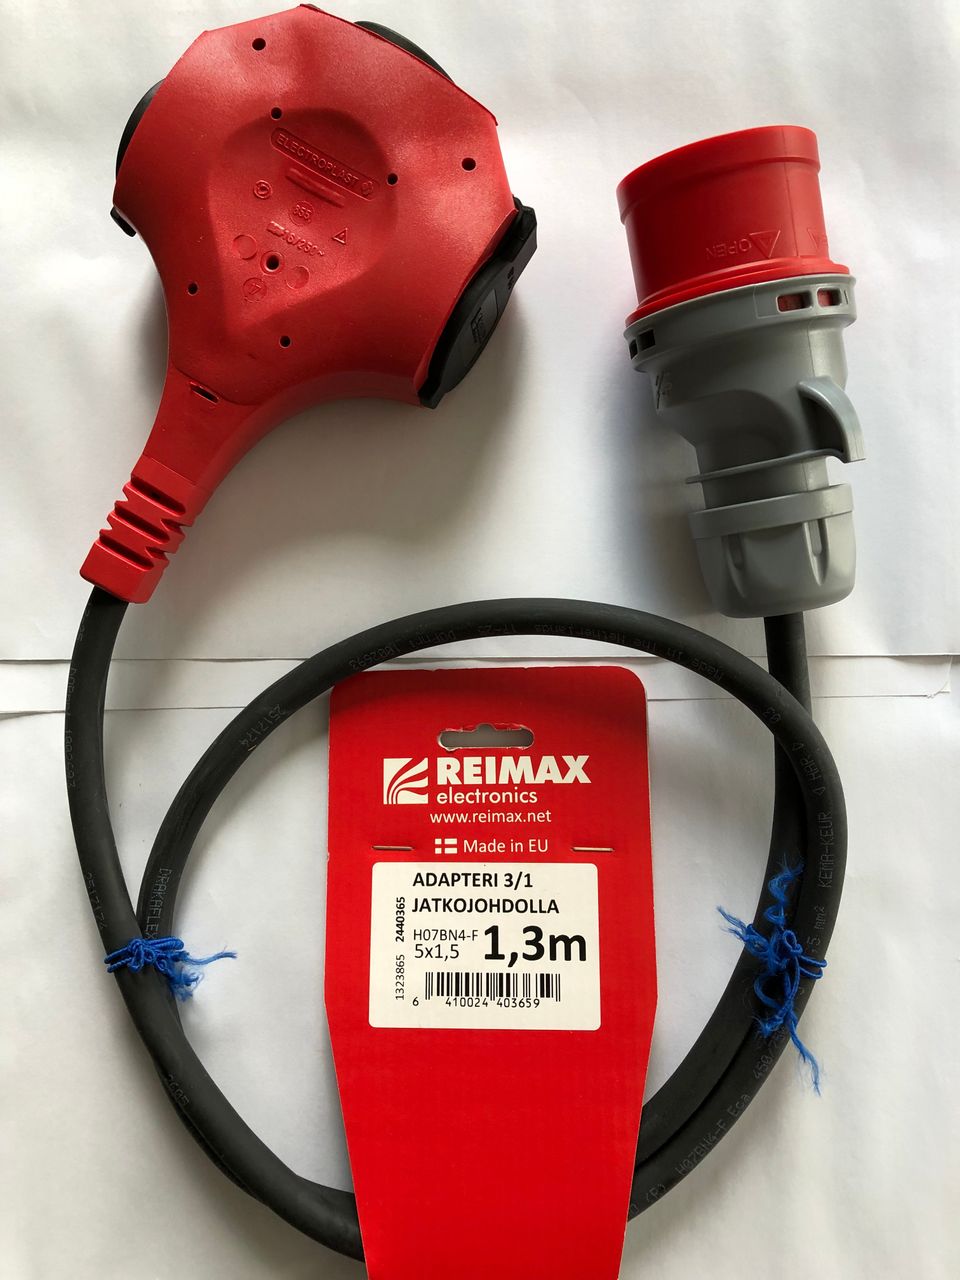 Reimax 3/1-vaihe adapteri